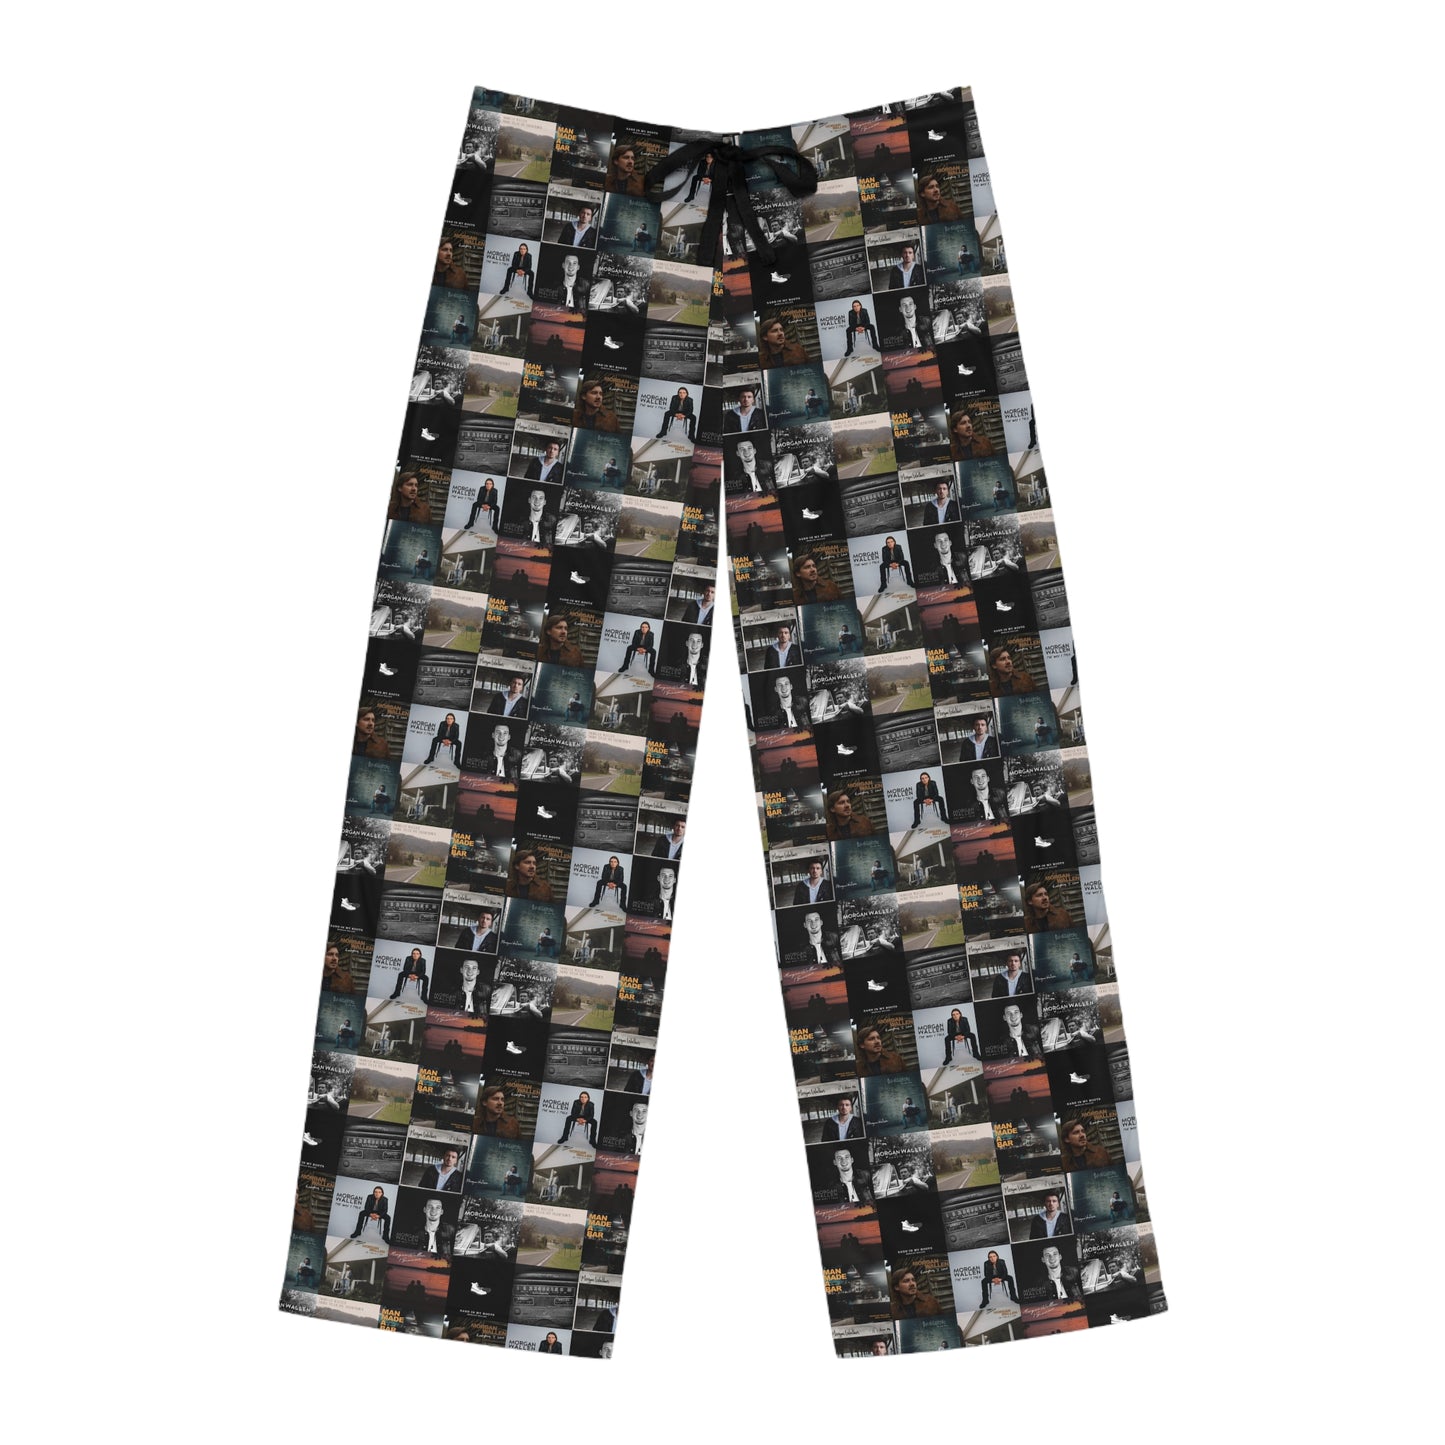 Morgan Wallen Album Cover Collage Men's Pajama Pants